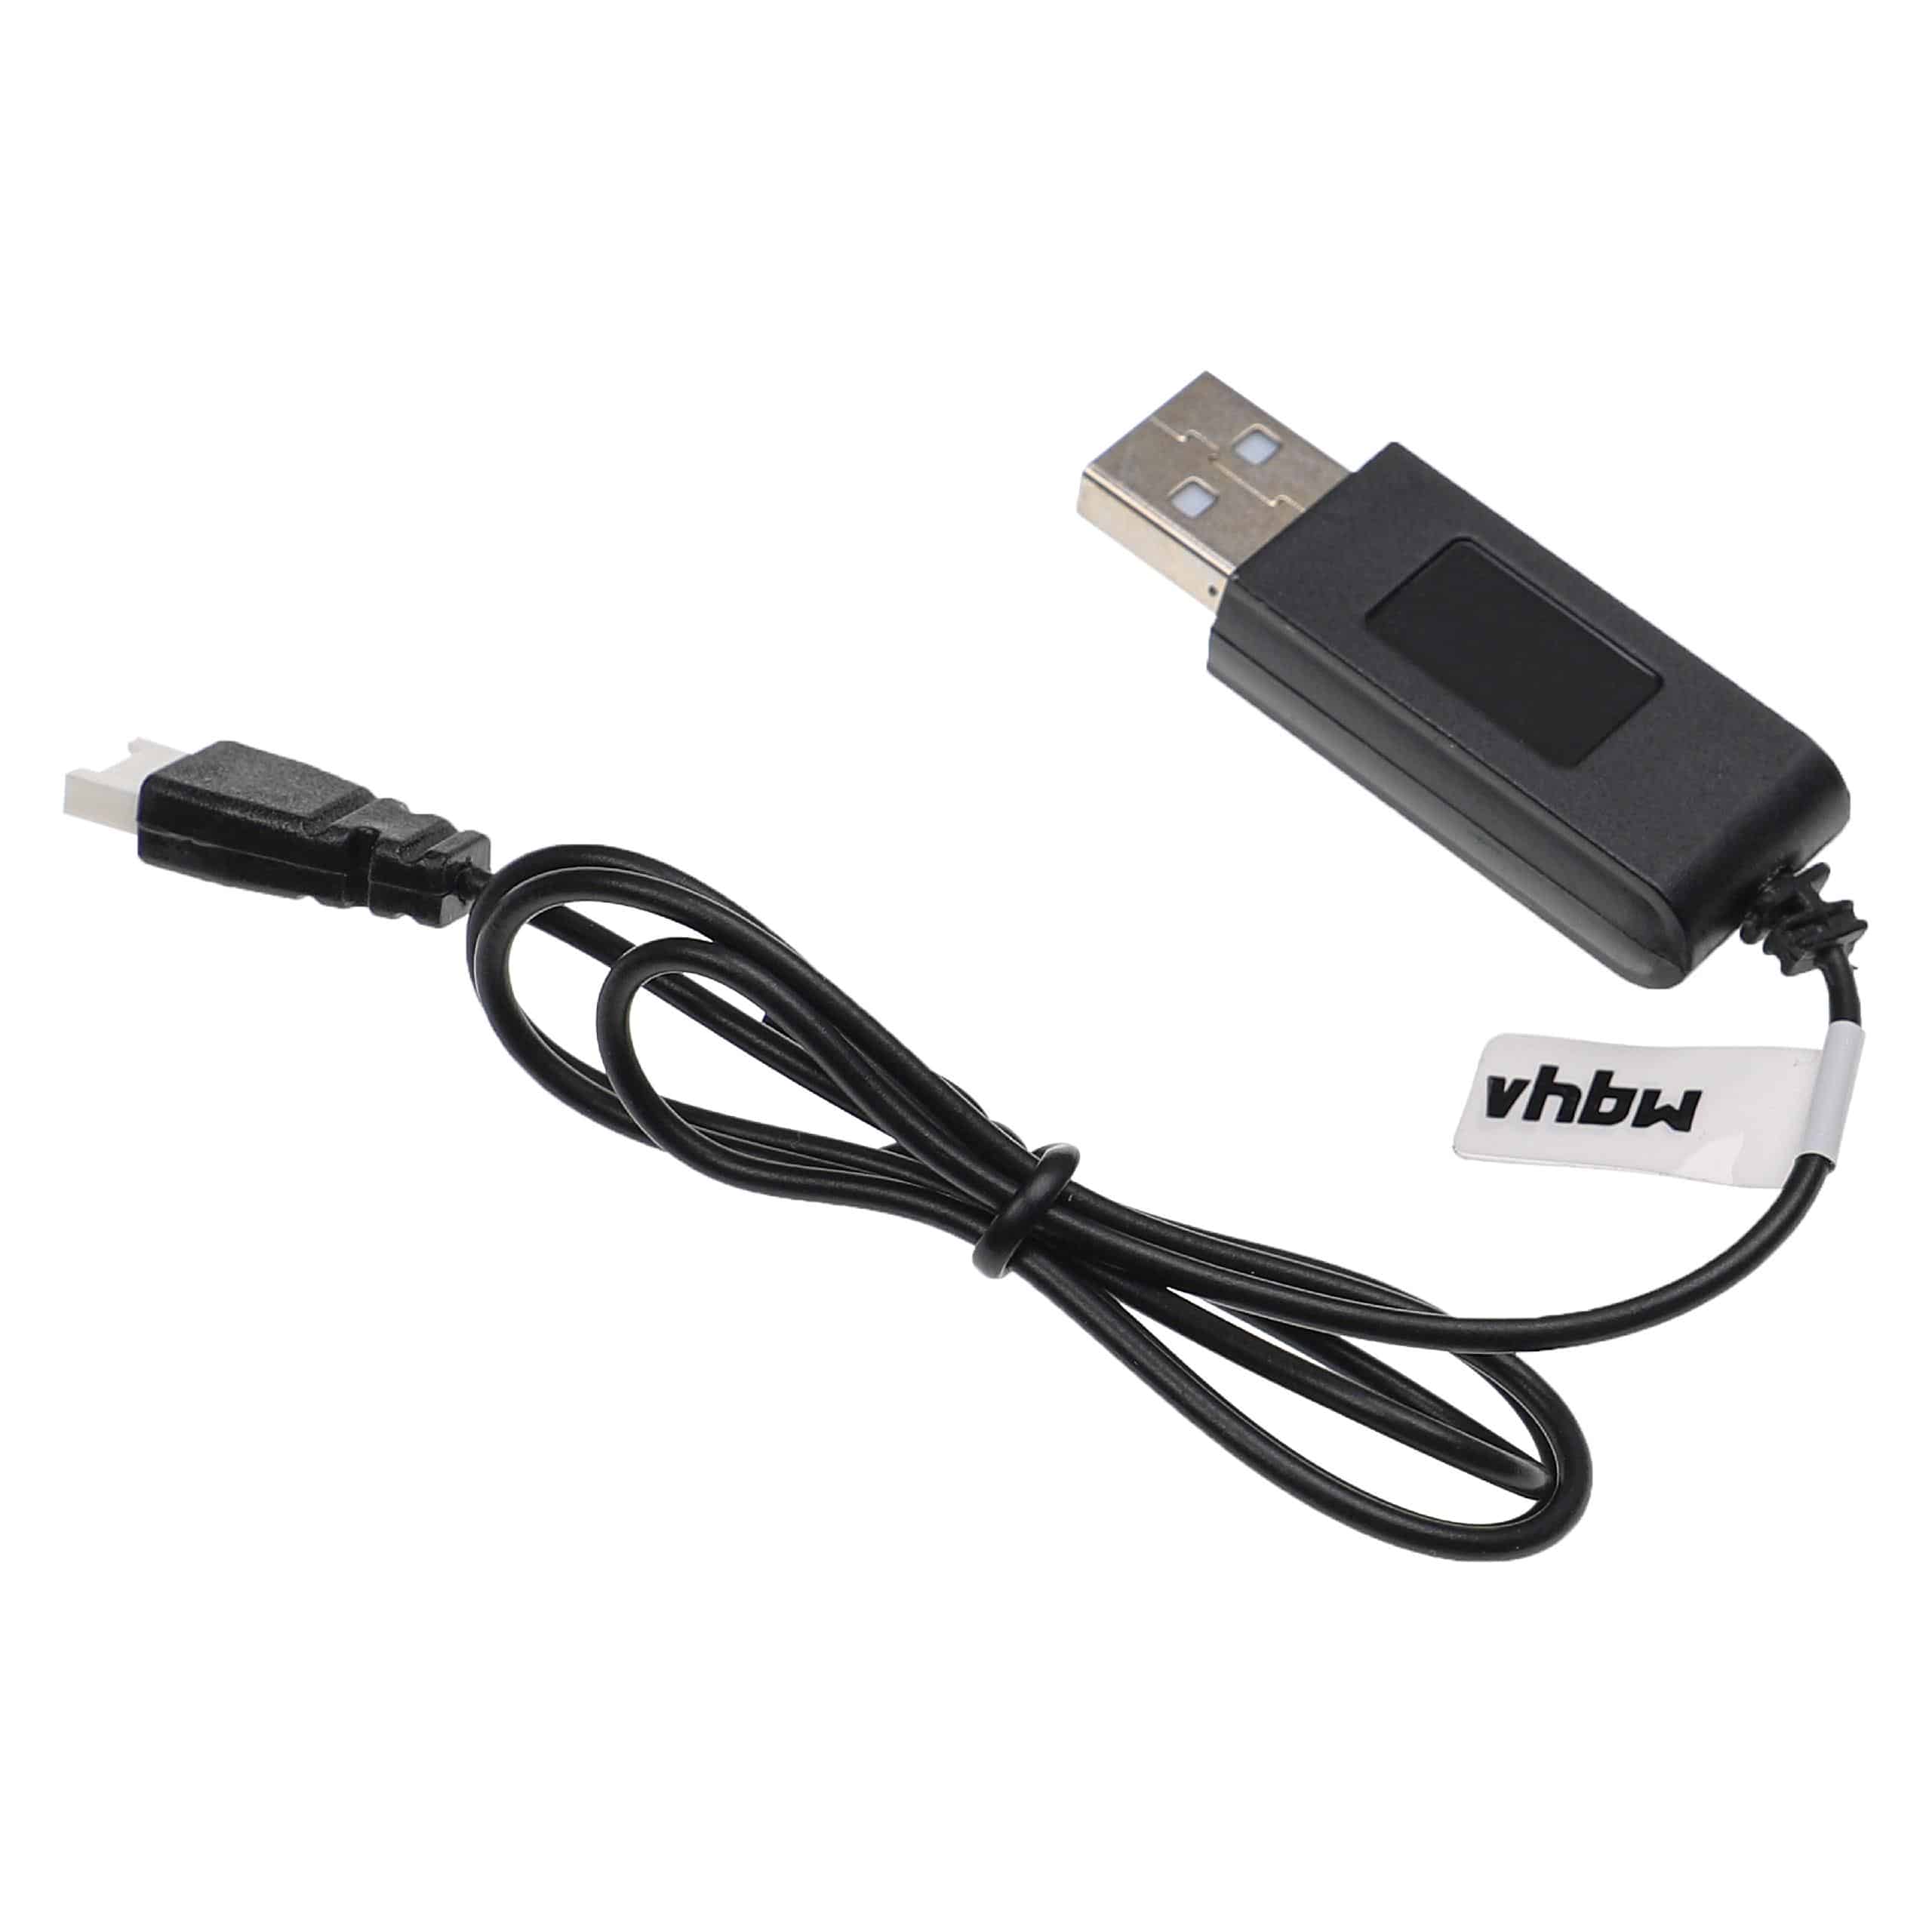 vhbw Cable de carga USB reemplaza Carrera 370410145 para con Carrera dron, cuadricóptero - 60 cm